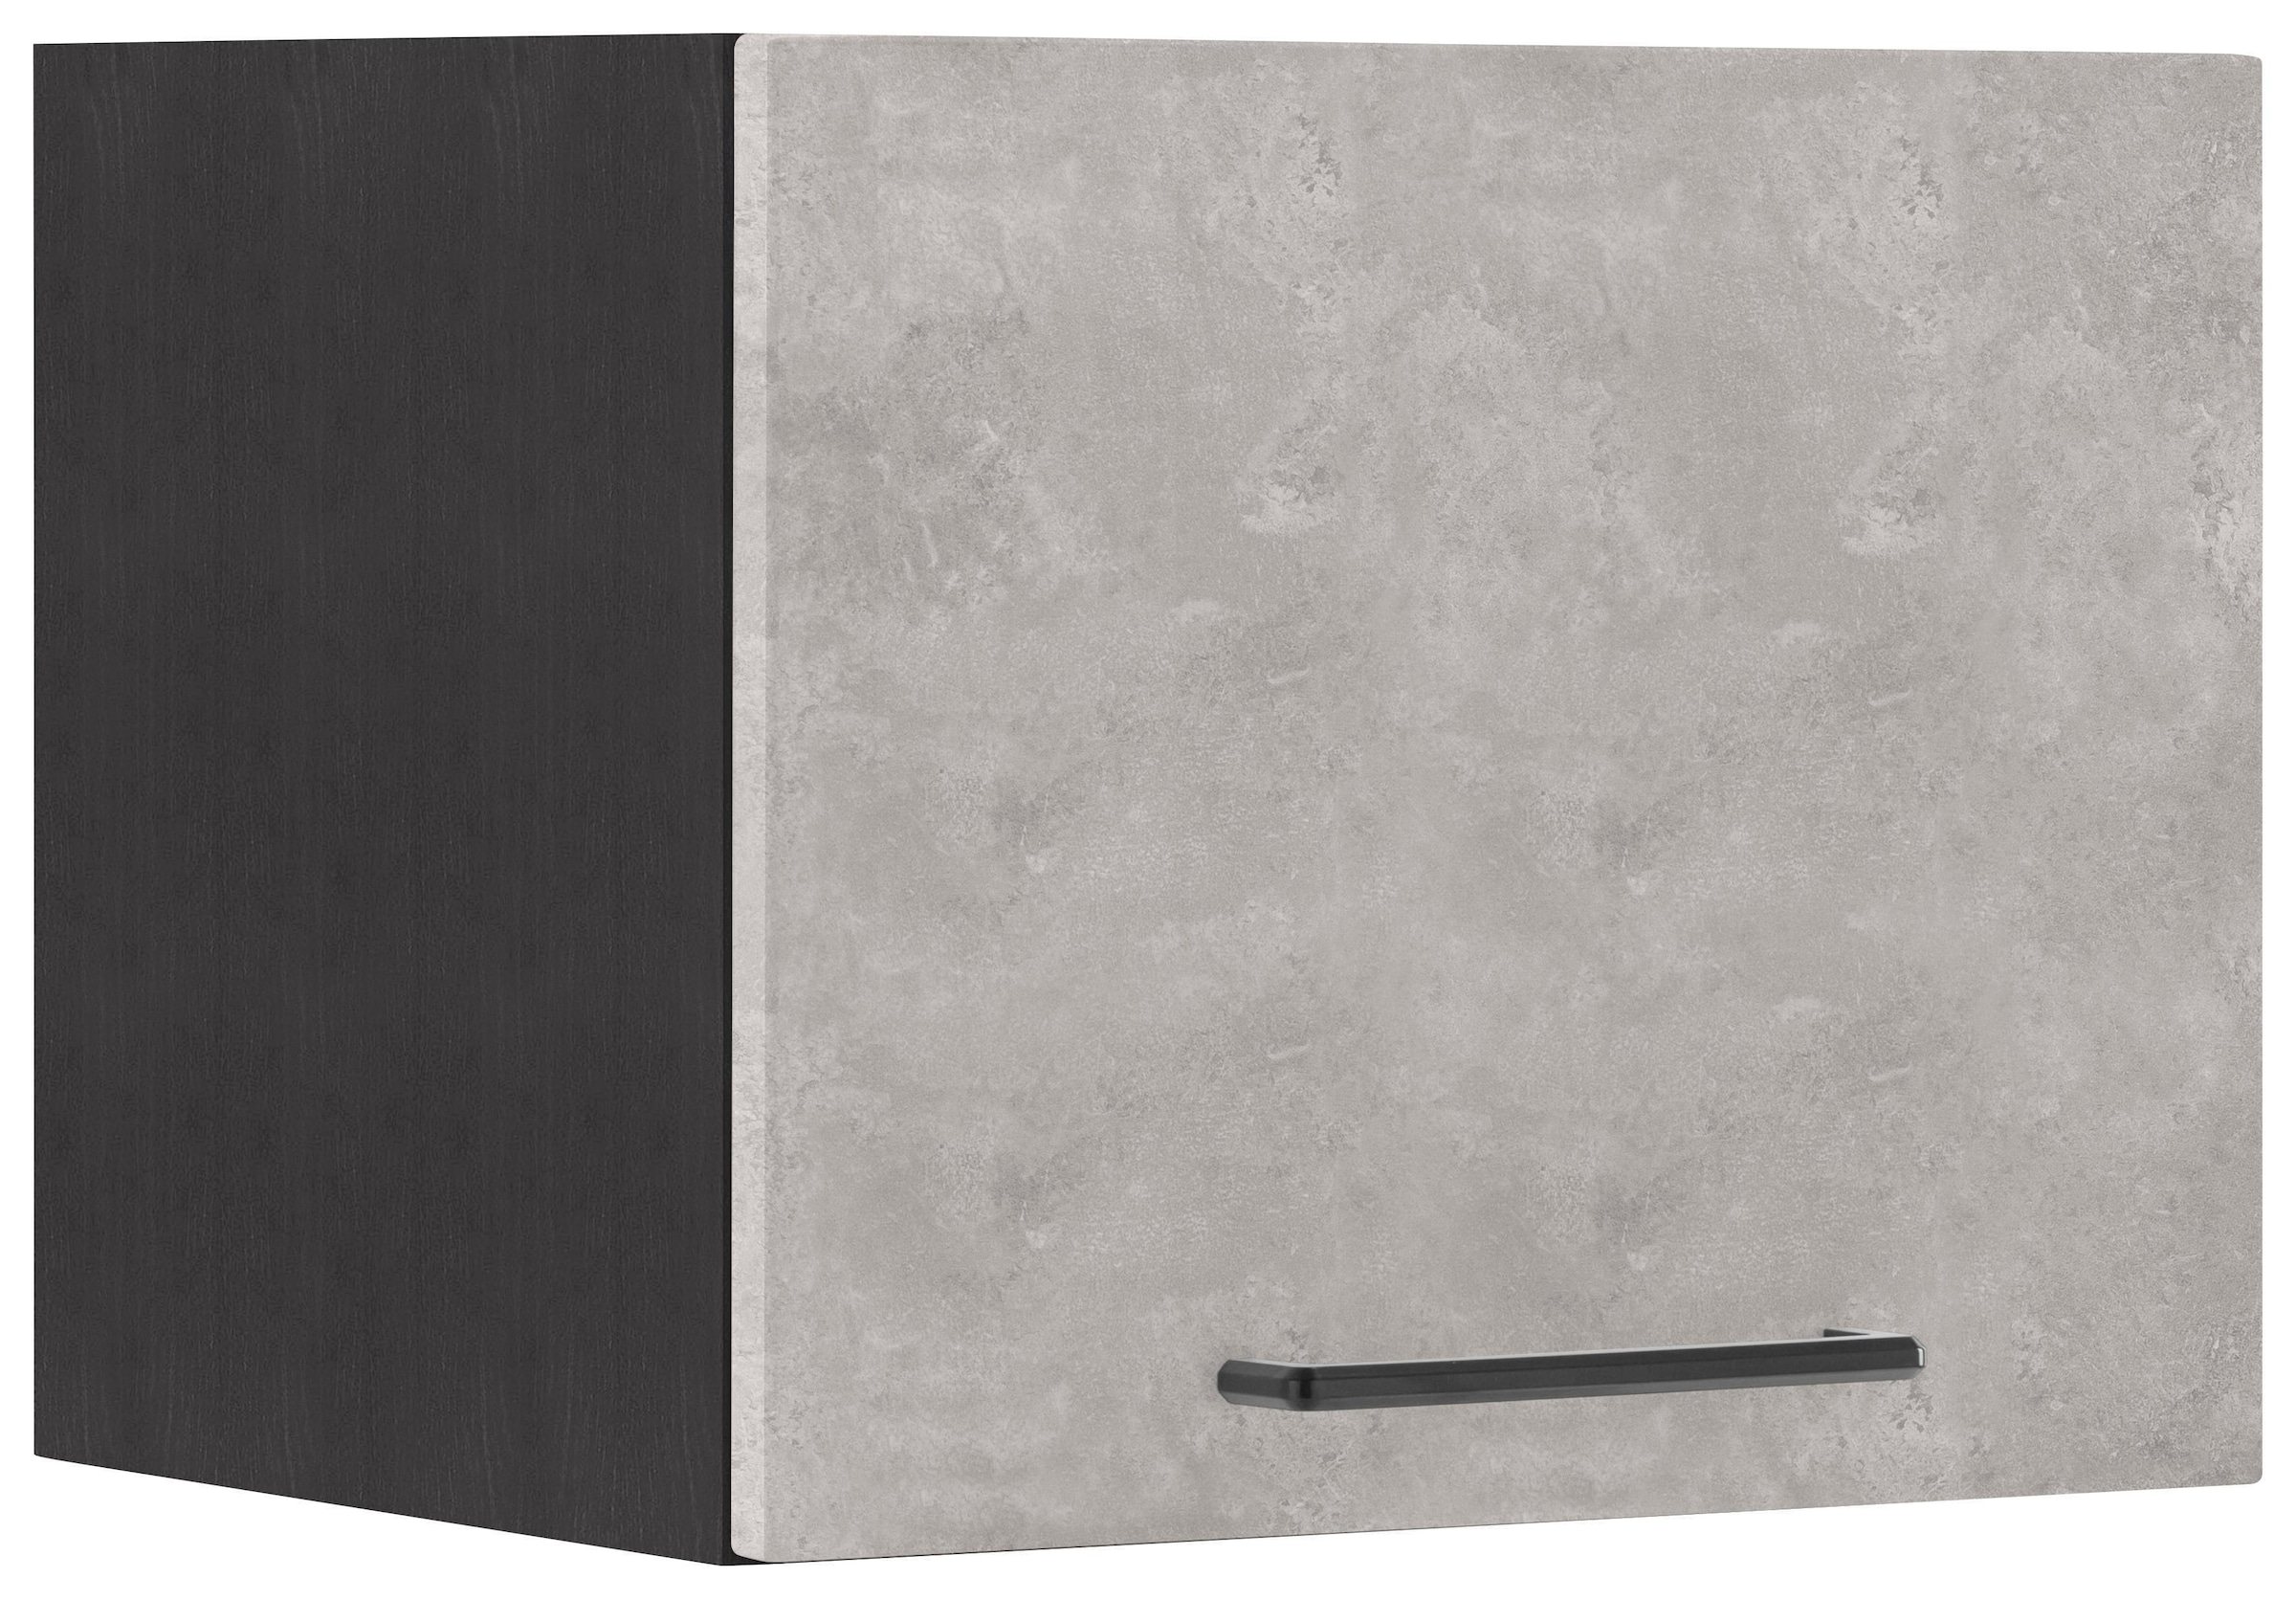 HELD MÖBEL Klapphängeschrank »Tulsa«, 40 cm breit, mit 1 Klappe, schwarzer  Metallgriff, MDF Front kaufen bei OTTO